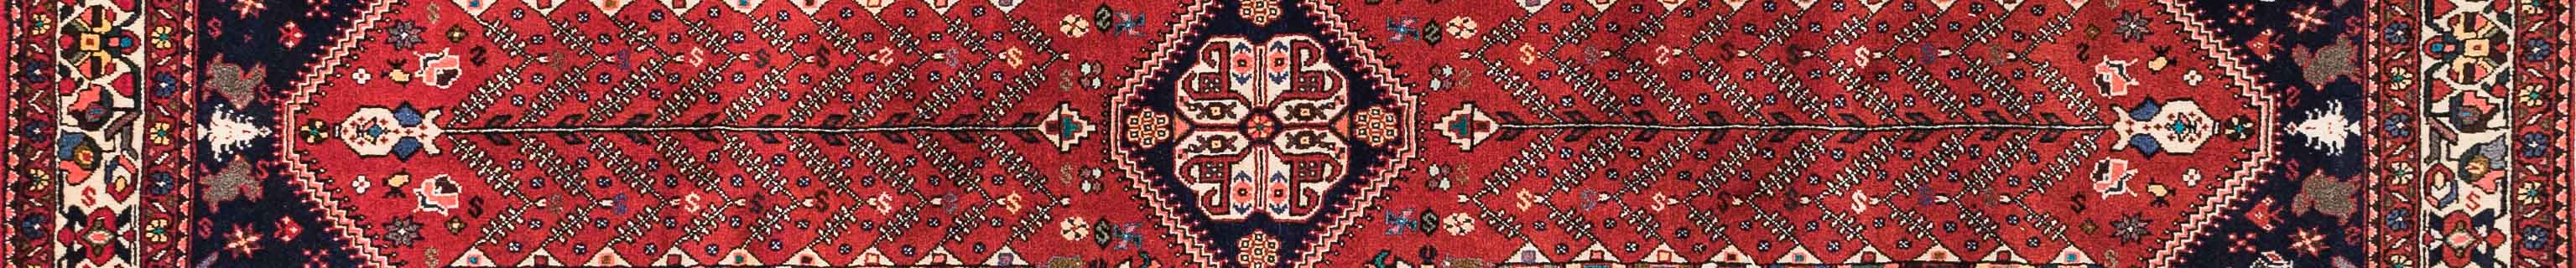 Abadeh Persian Carpet Rug N1Carpet Canada Montreal Tapis Persan 2950